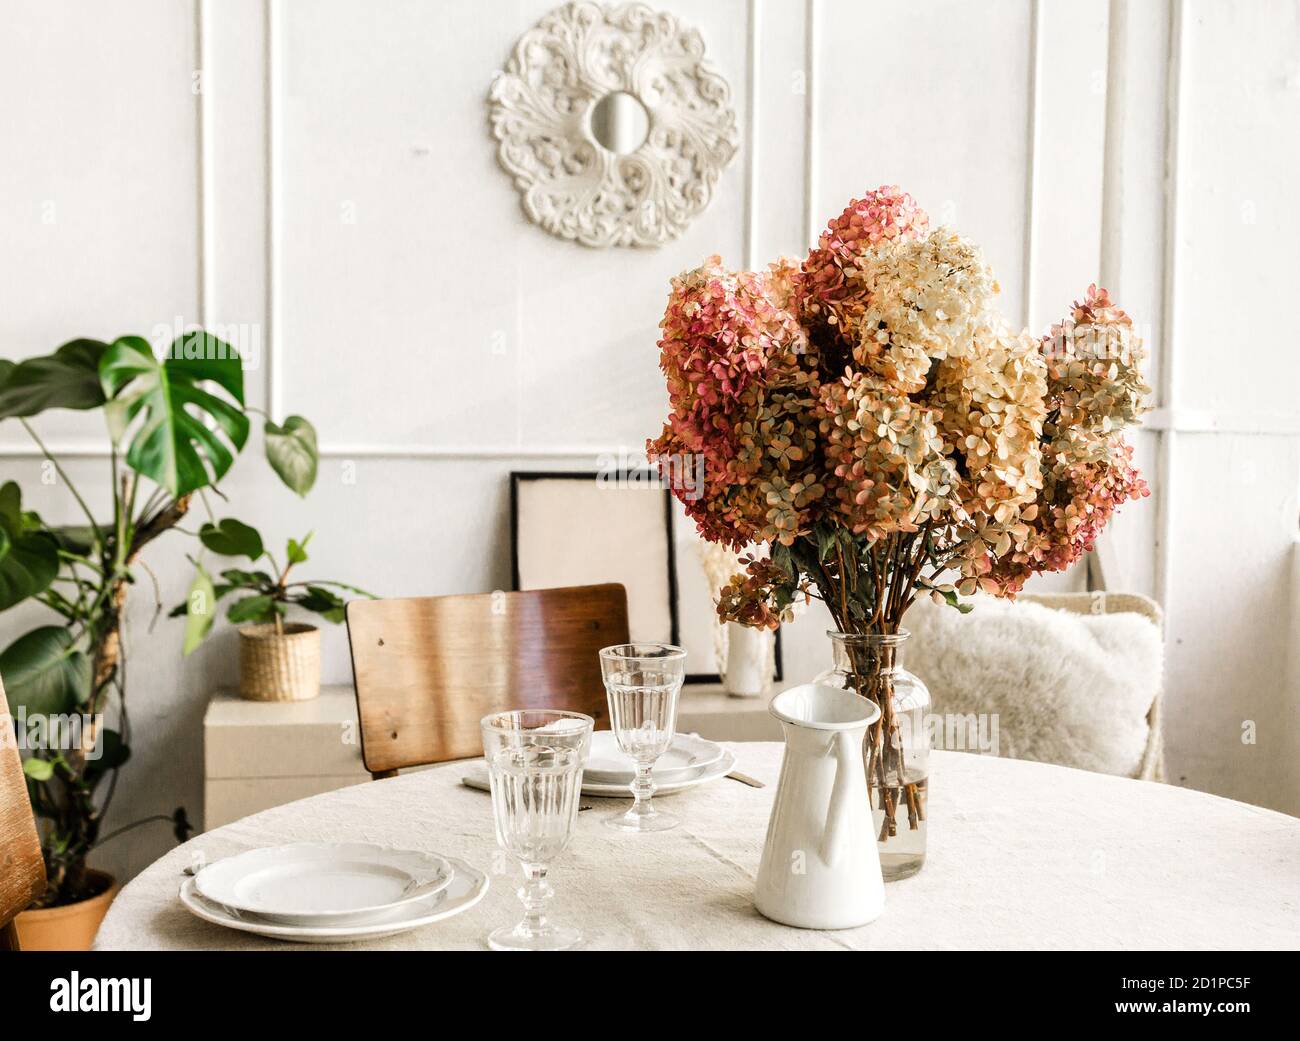 Parte del interior de la habitación. Un jarrón de flores está sobre una mesa redonda contra una pared de luz. Foto de stock